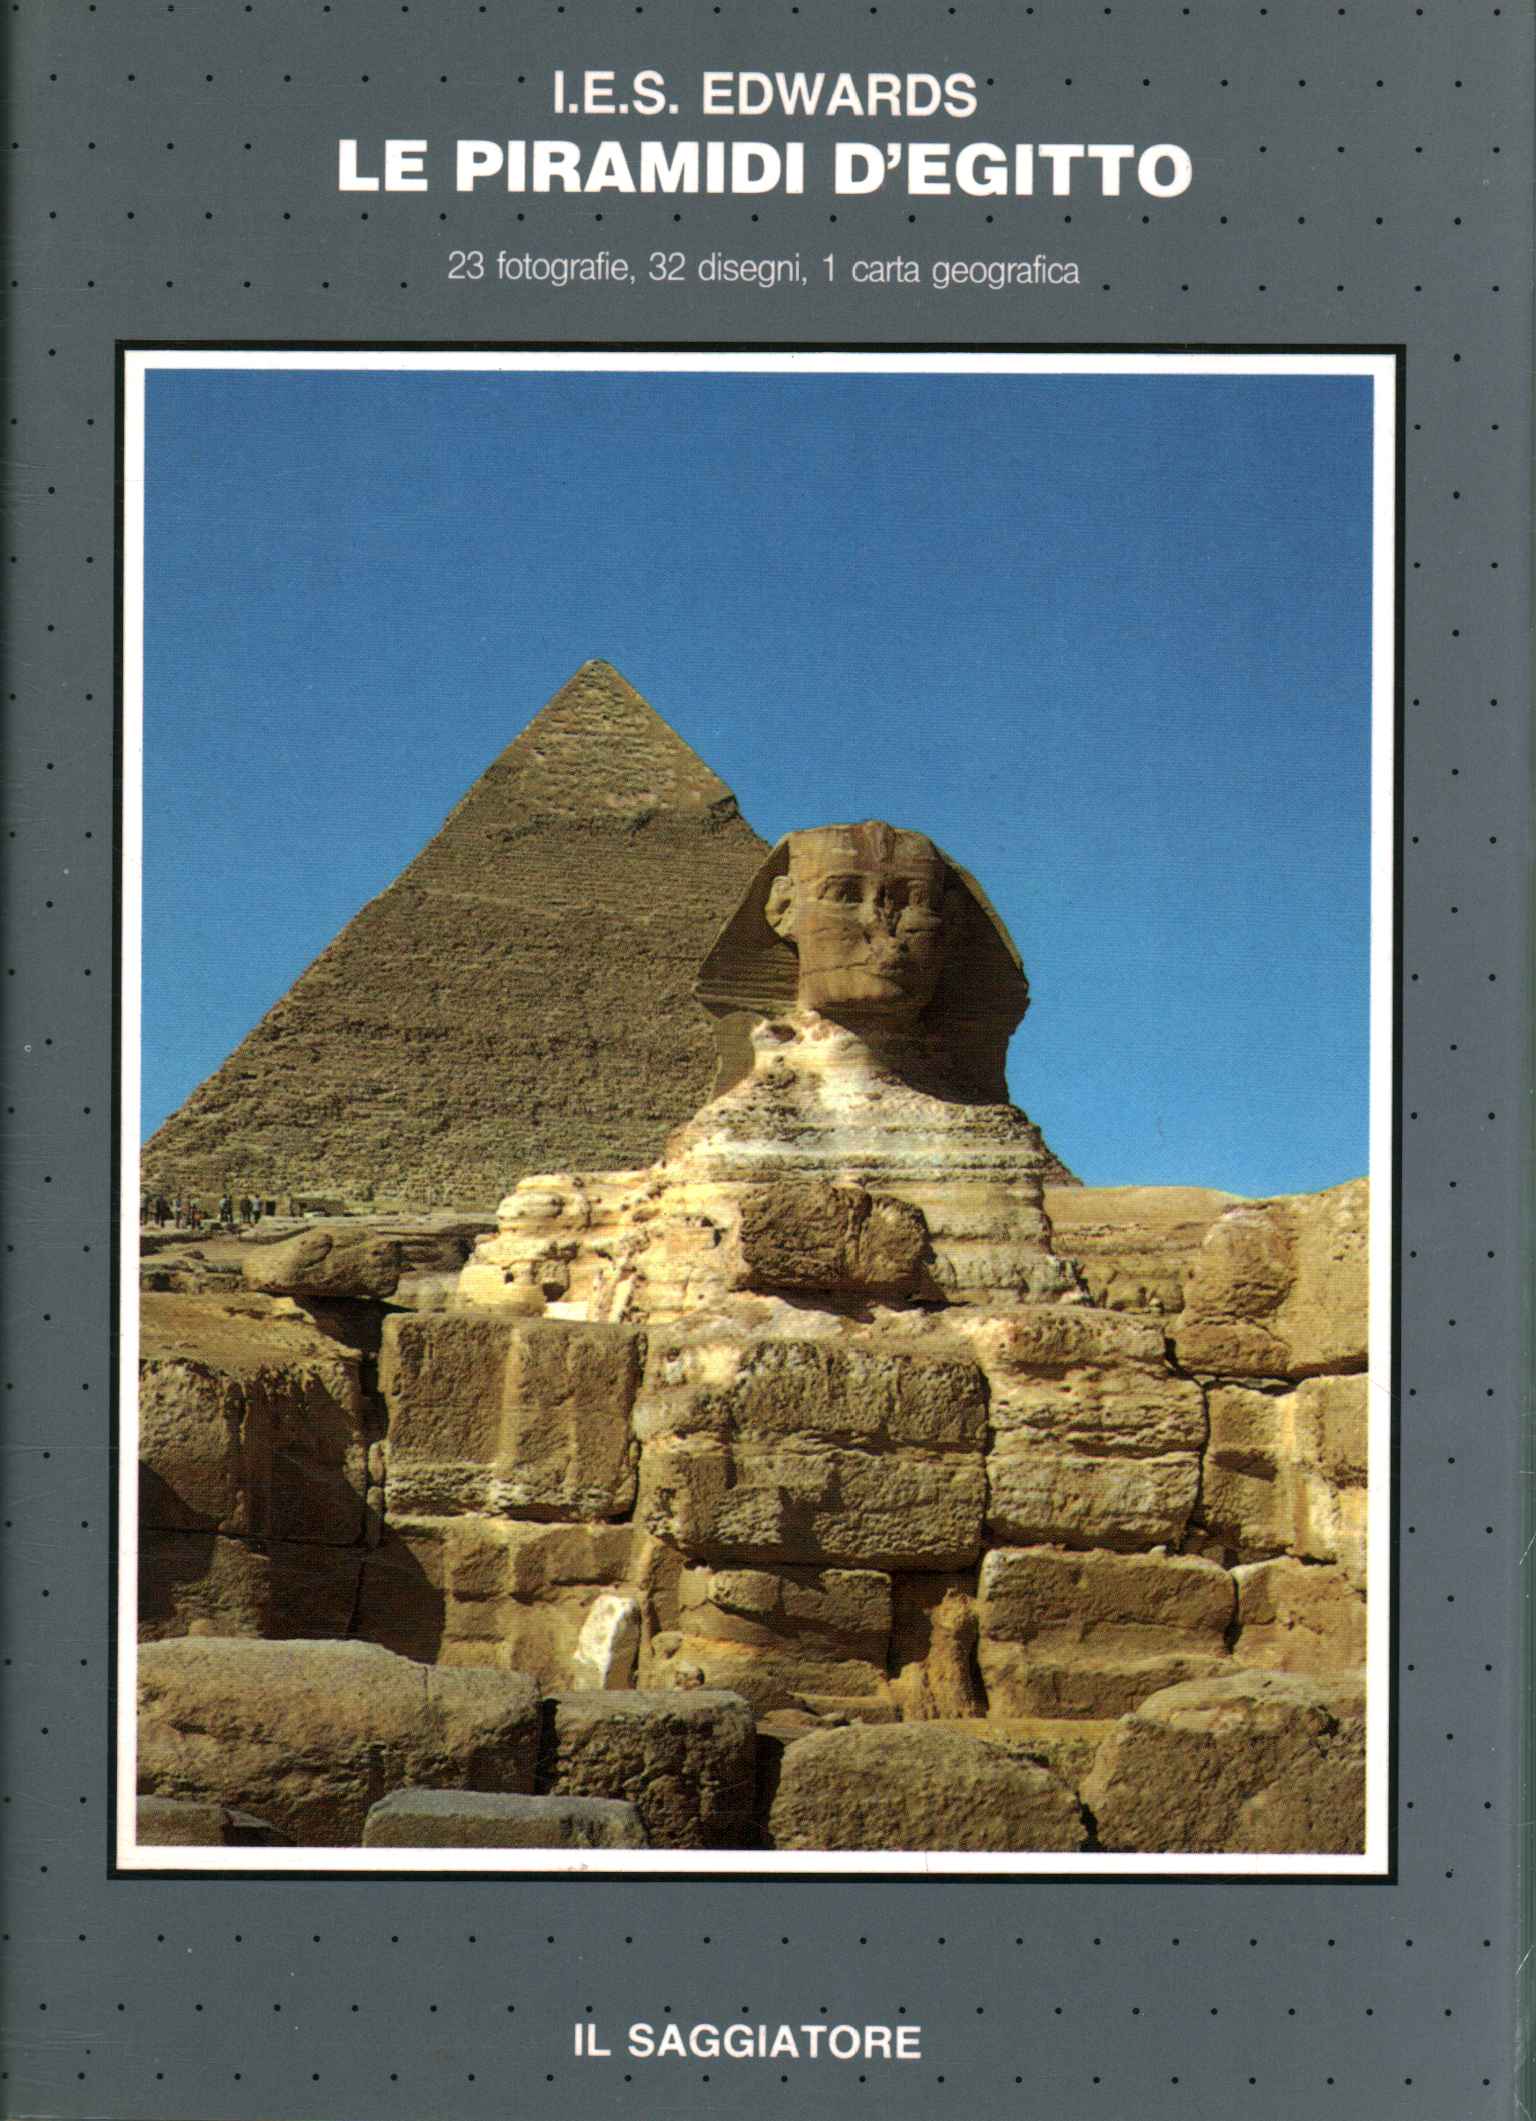 Die Pyramiden von Ägypten